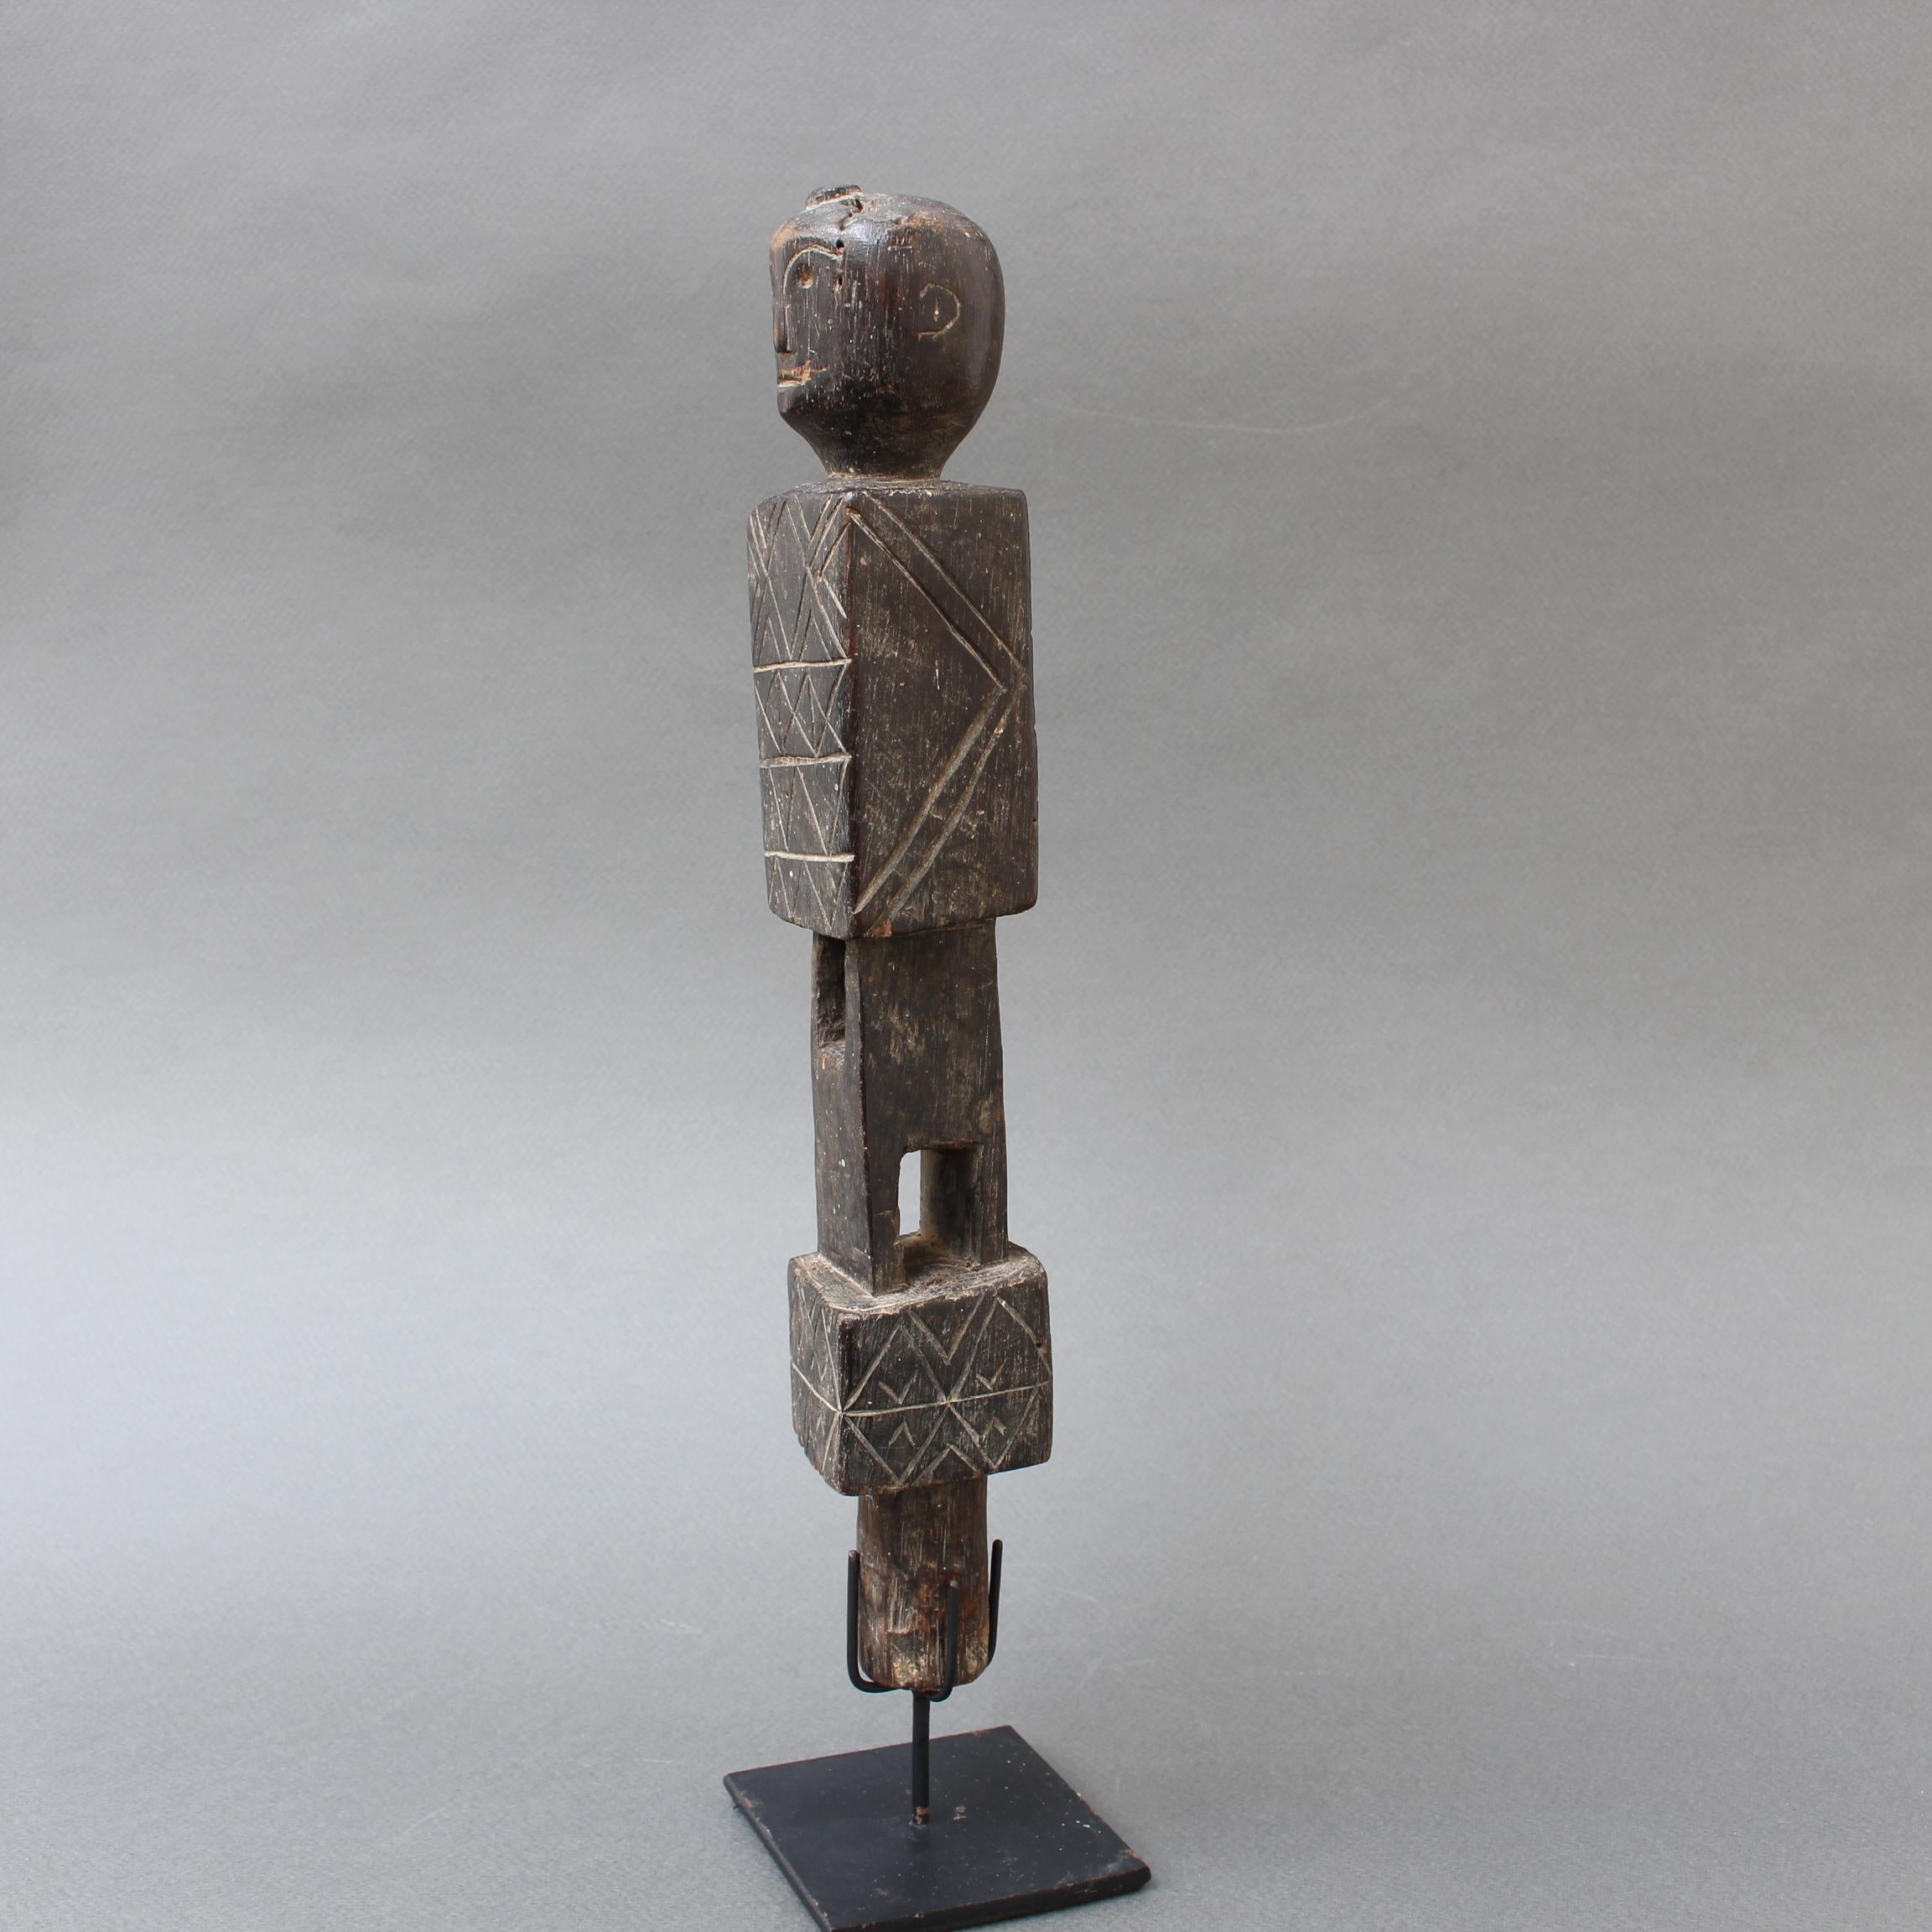 Geschnitzter hölzerner Schraubstock mit menschlichem Abschluss aus Nias, Indonesien (ca. 1960-1970er Jahre). Ein auffallend geschnitztes Stück mit geometrischen Mustern auf der Ober- und Unterseite der Figur. Die Figur ist mit rechteckigen